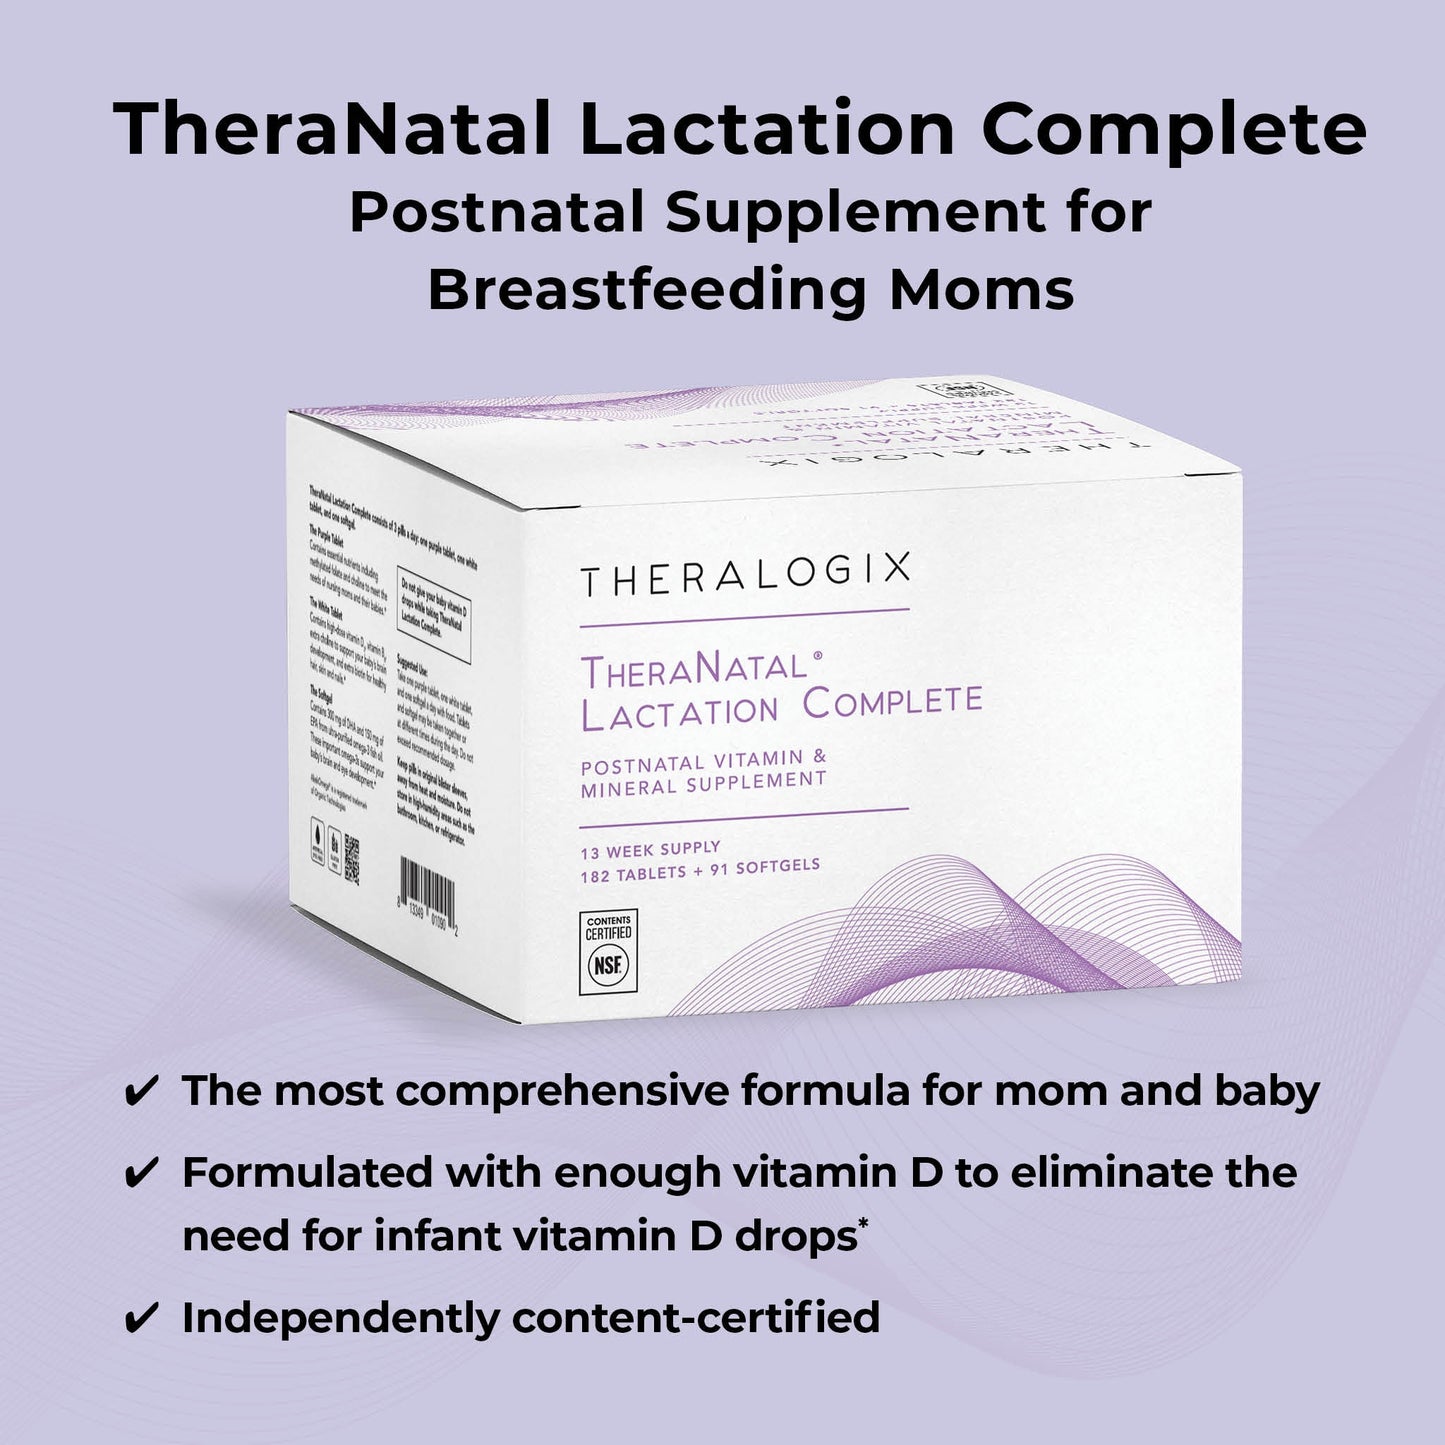 TheraNatal® Lactation Complete Postnatal Supplement